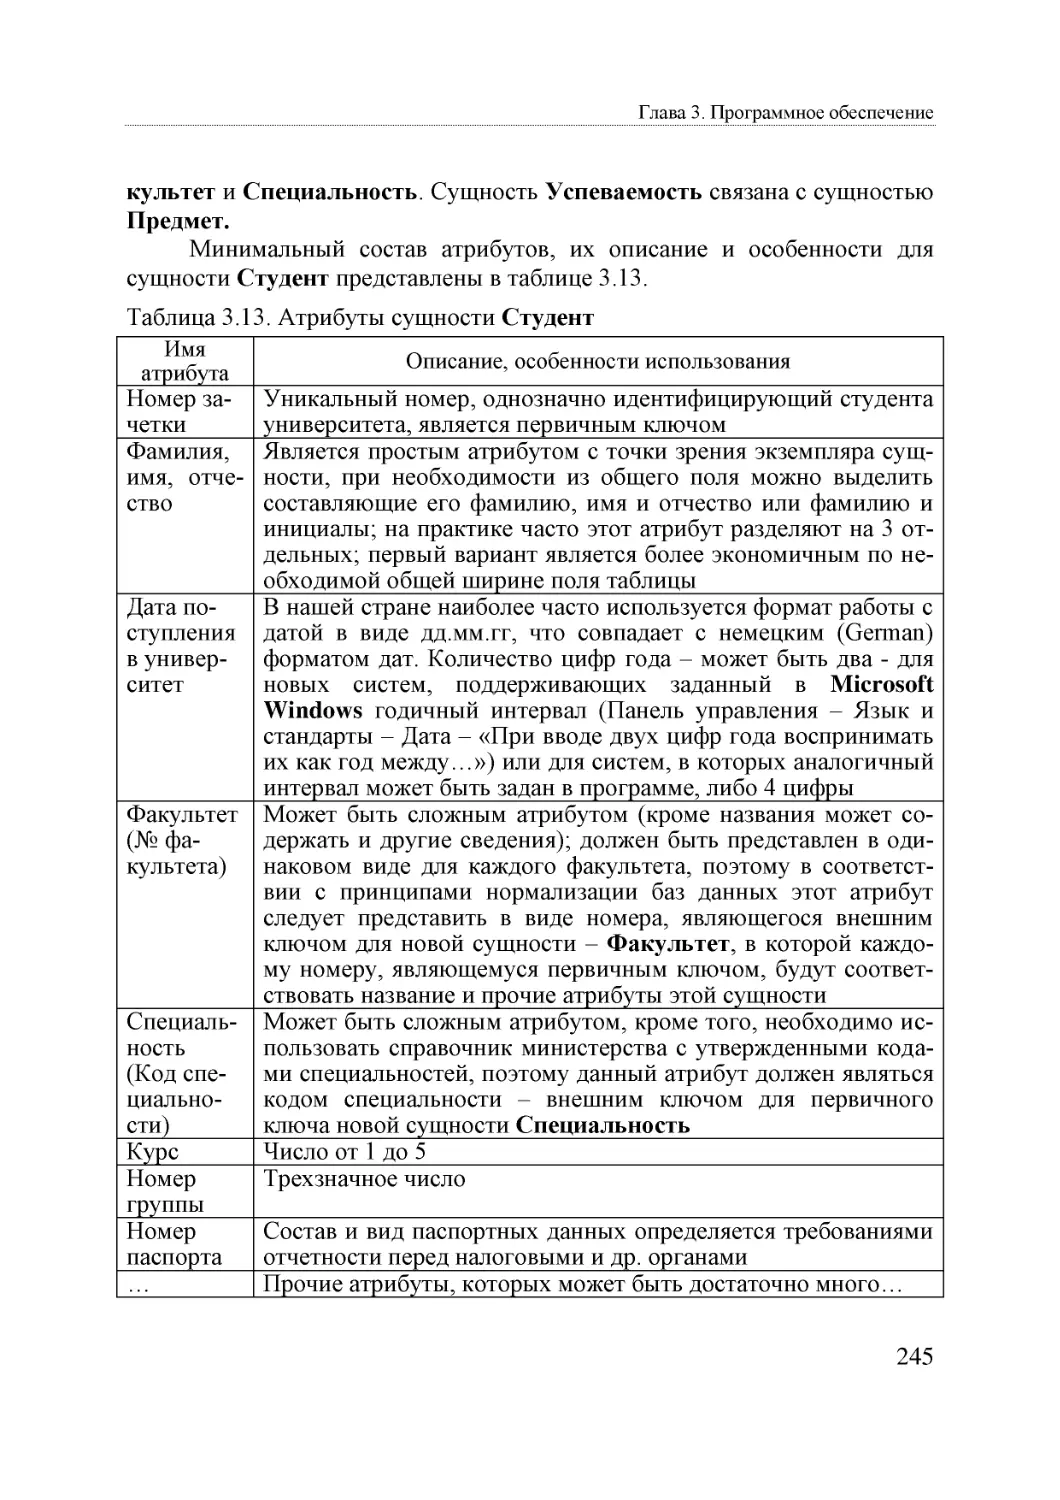 Informatika_Uchebnik_dlya_vuzov_2010 245